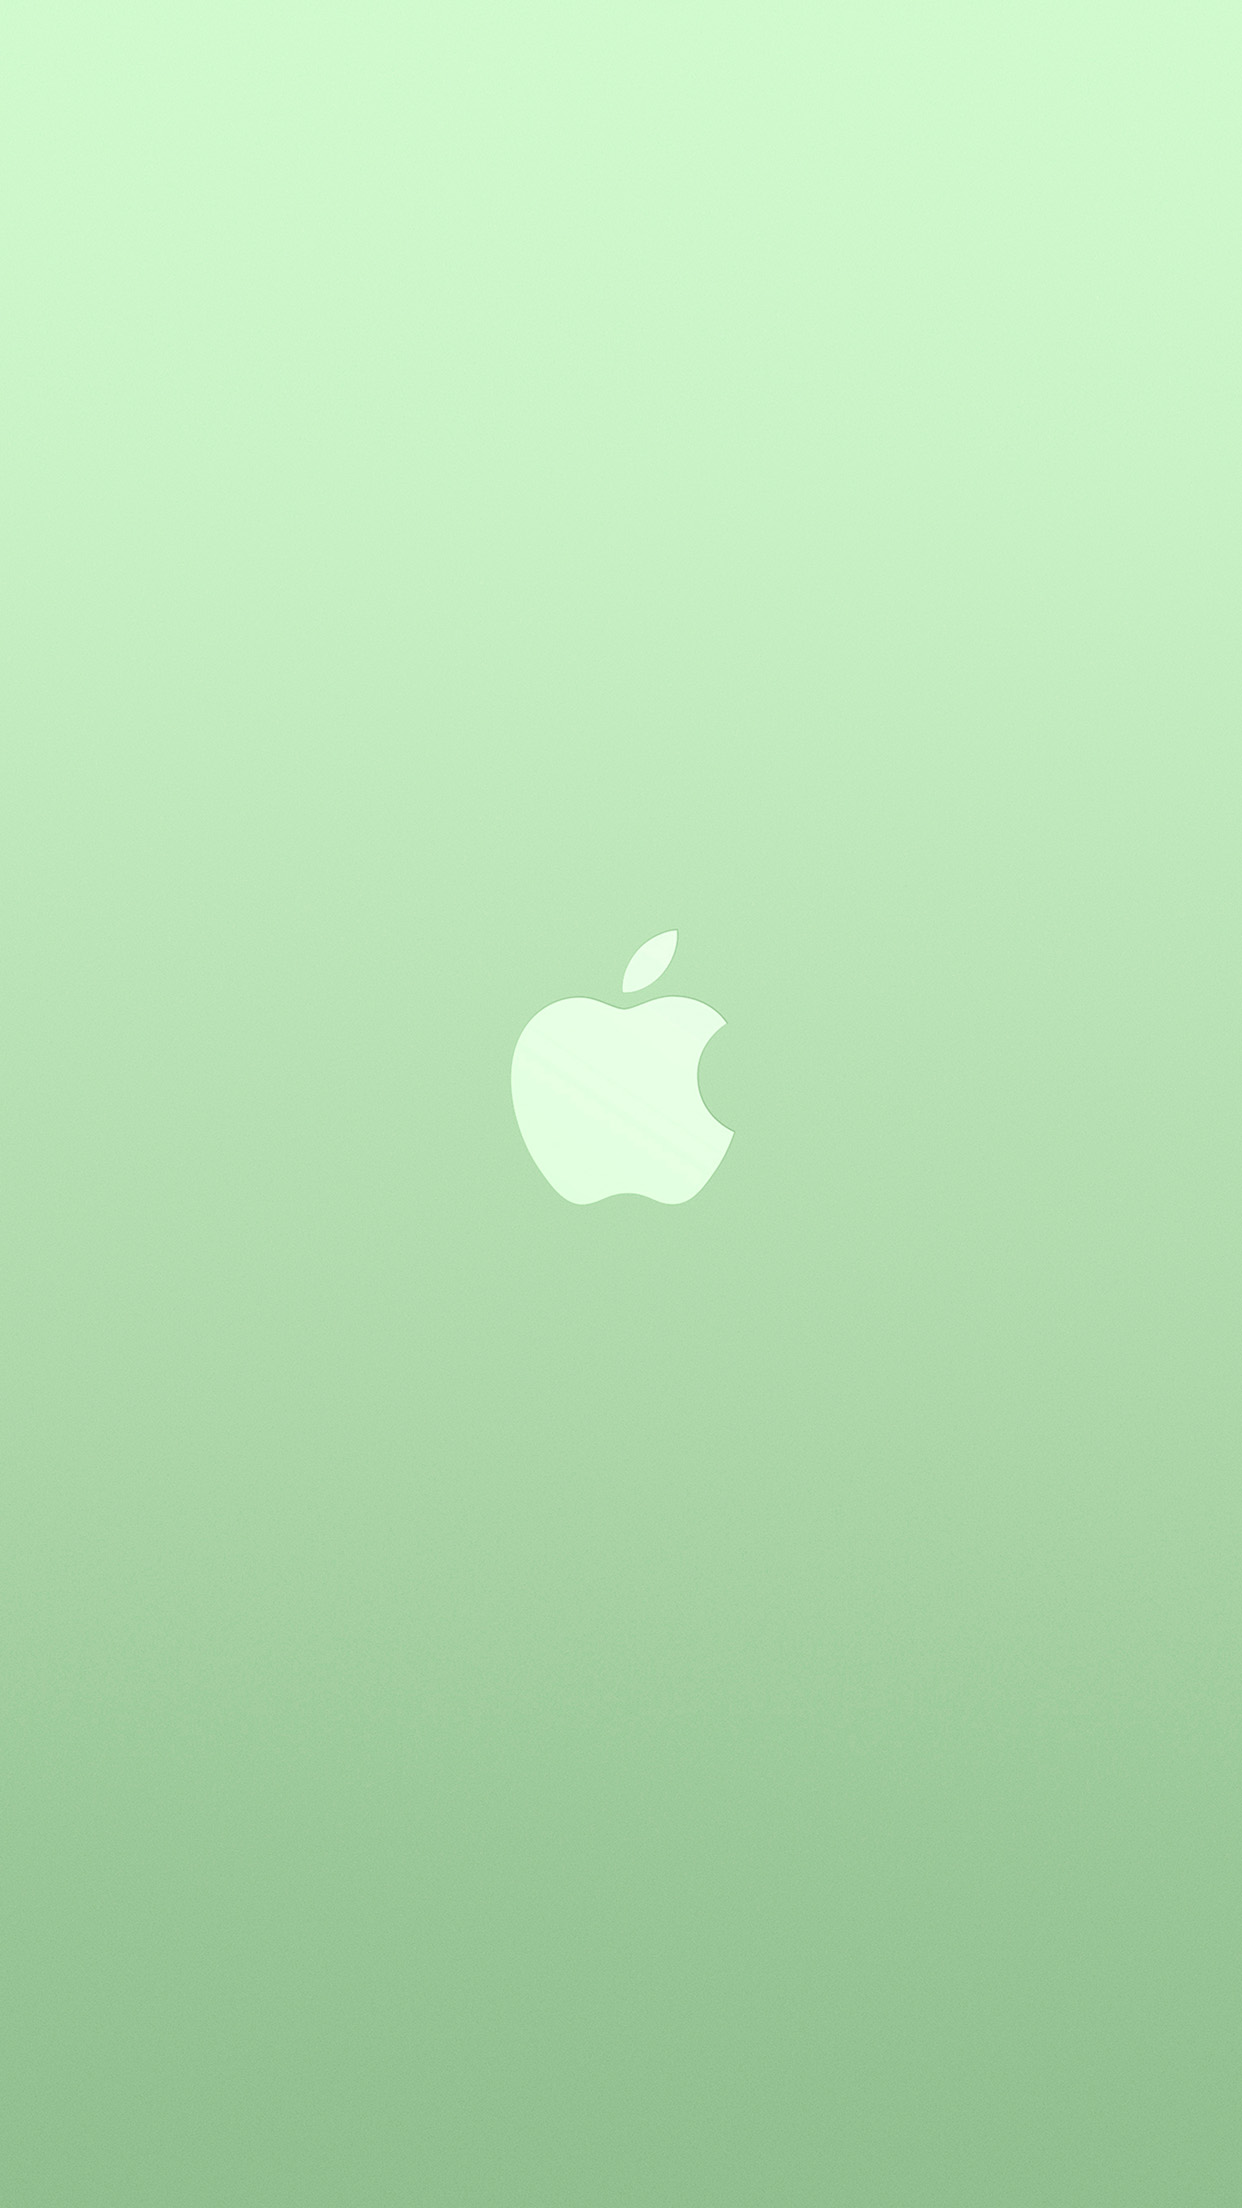 apple logo wallpaper for pc